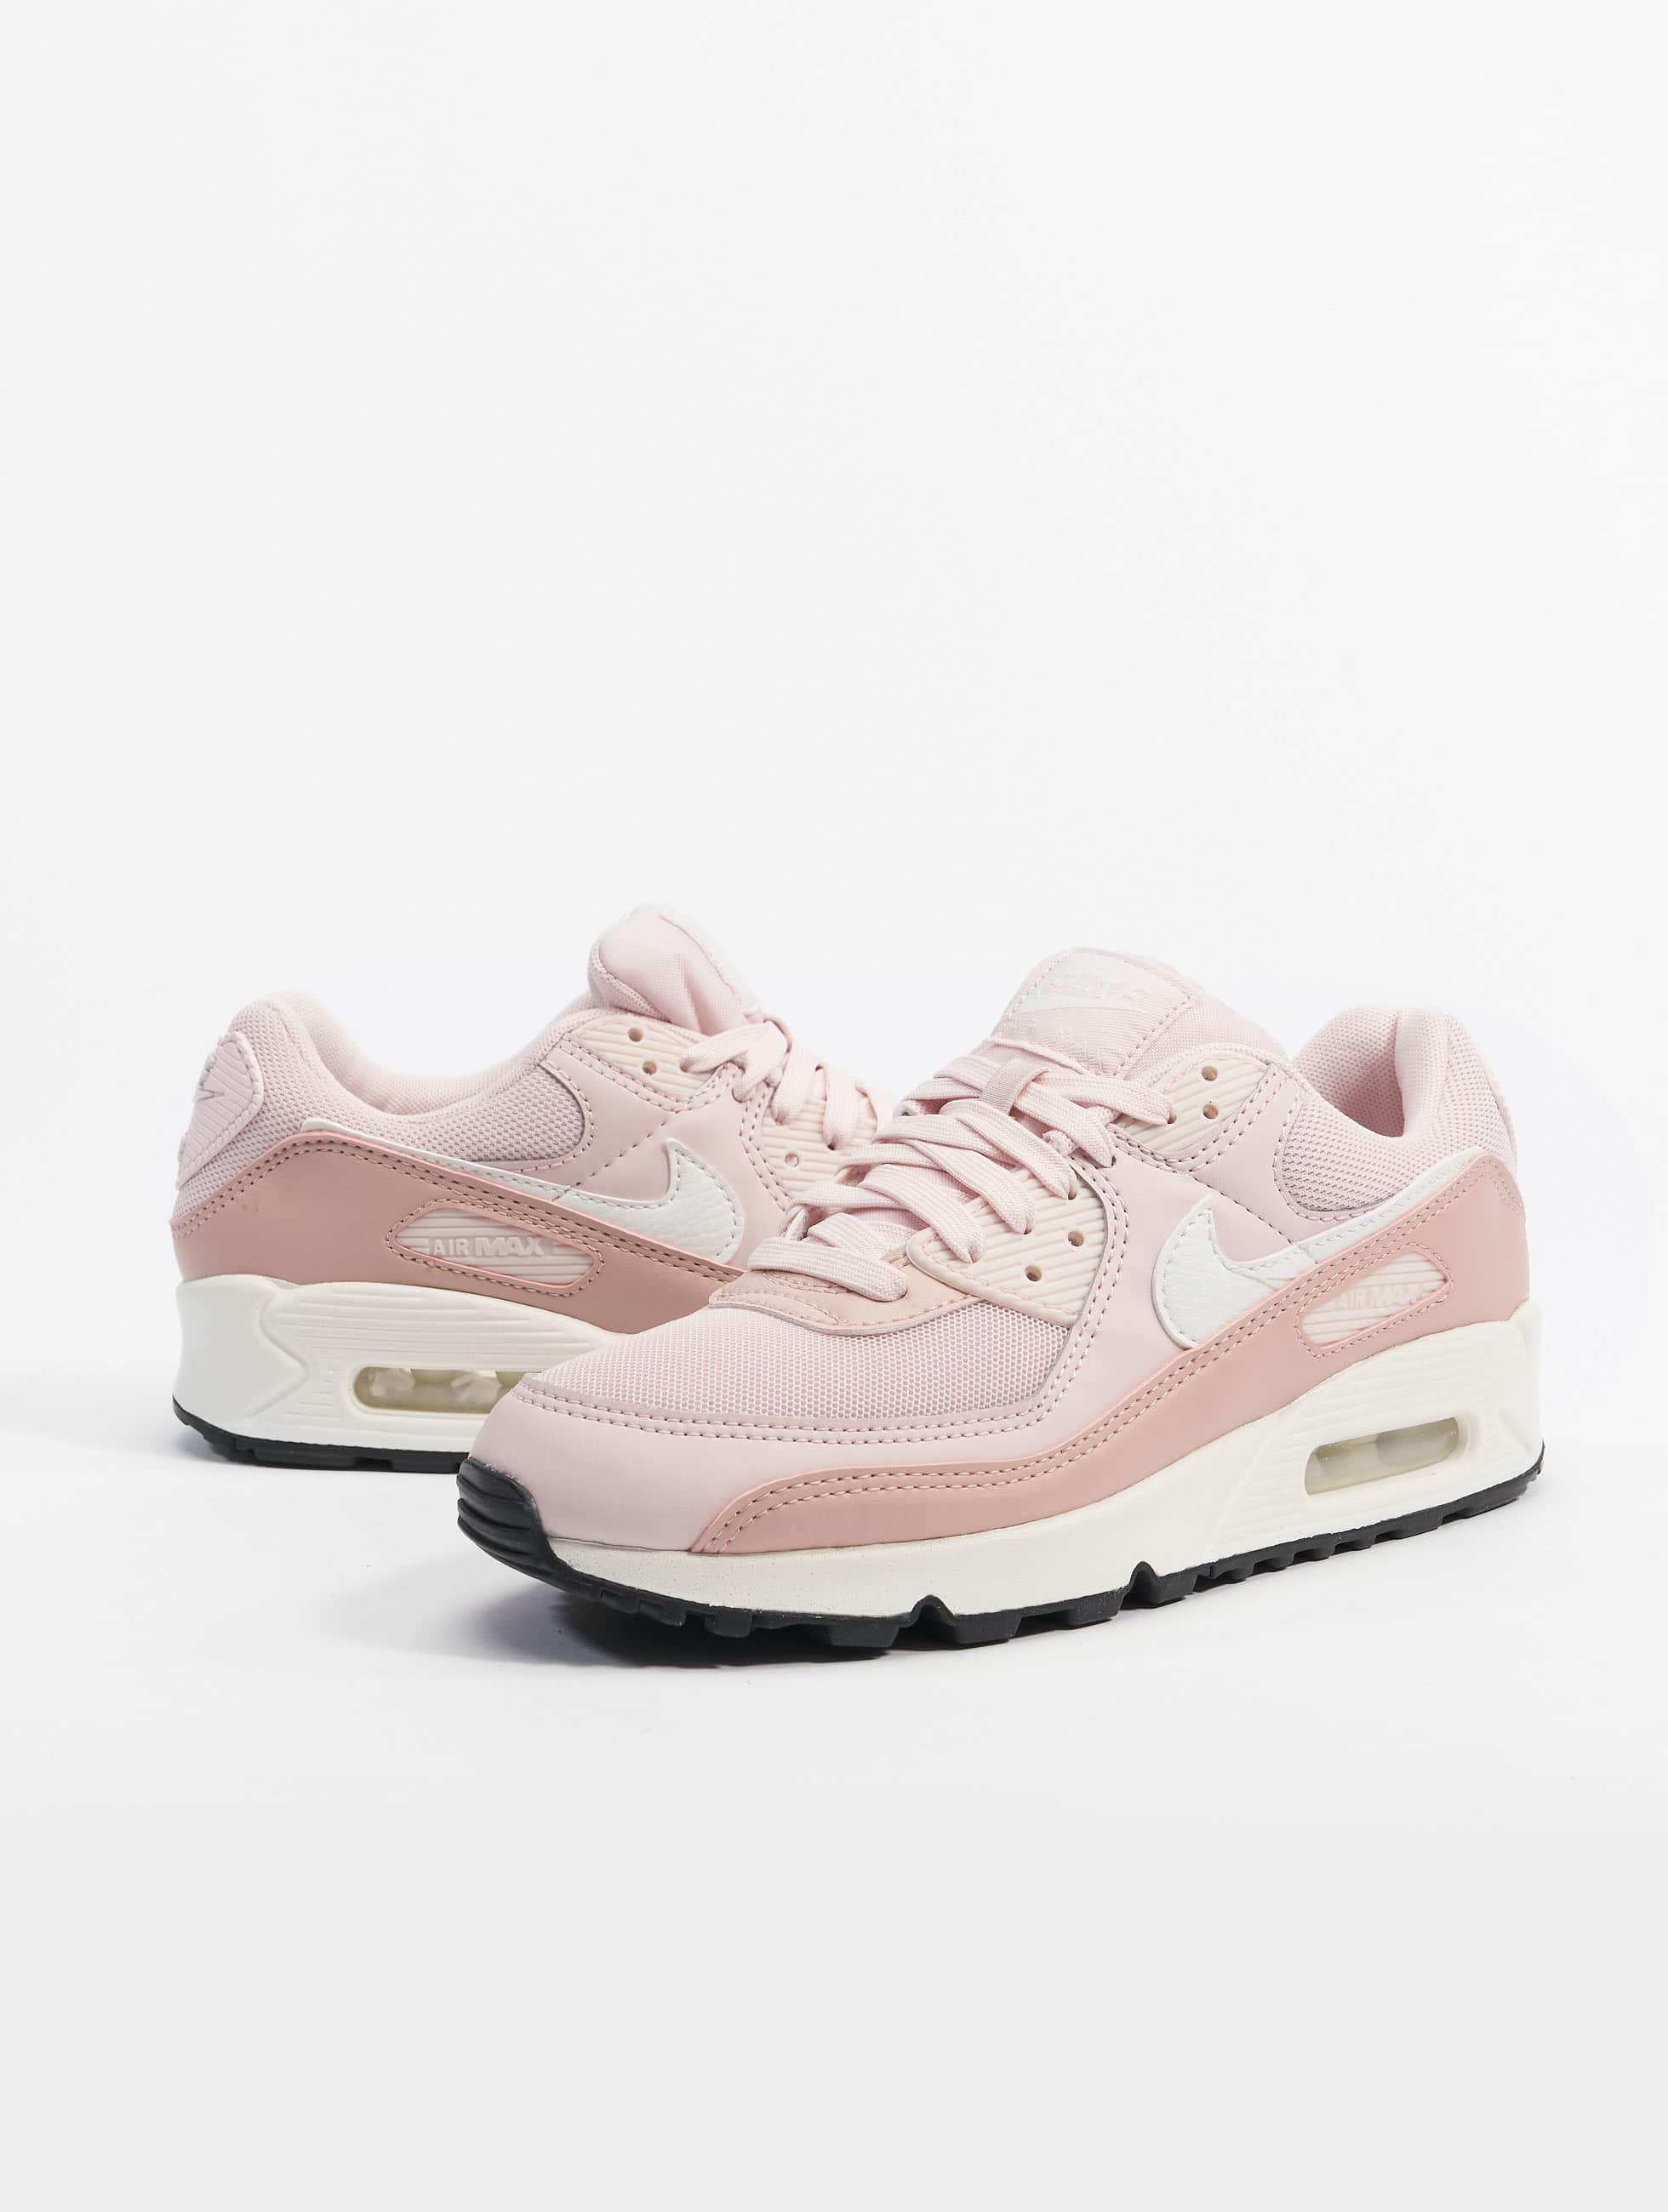 Manier Bewusteloos Grootste Nike Damen Sneaker Air Max in rosa 974677